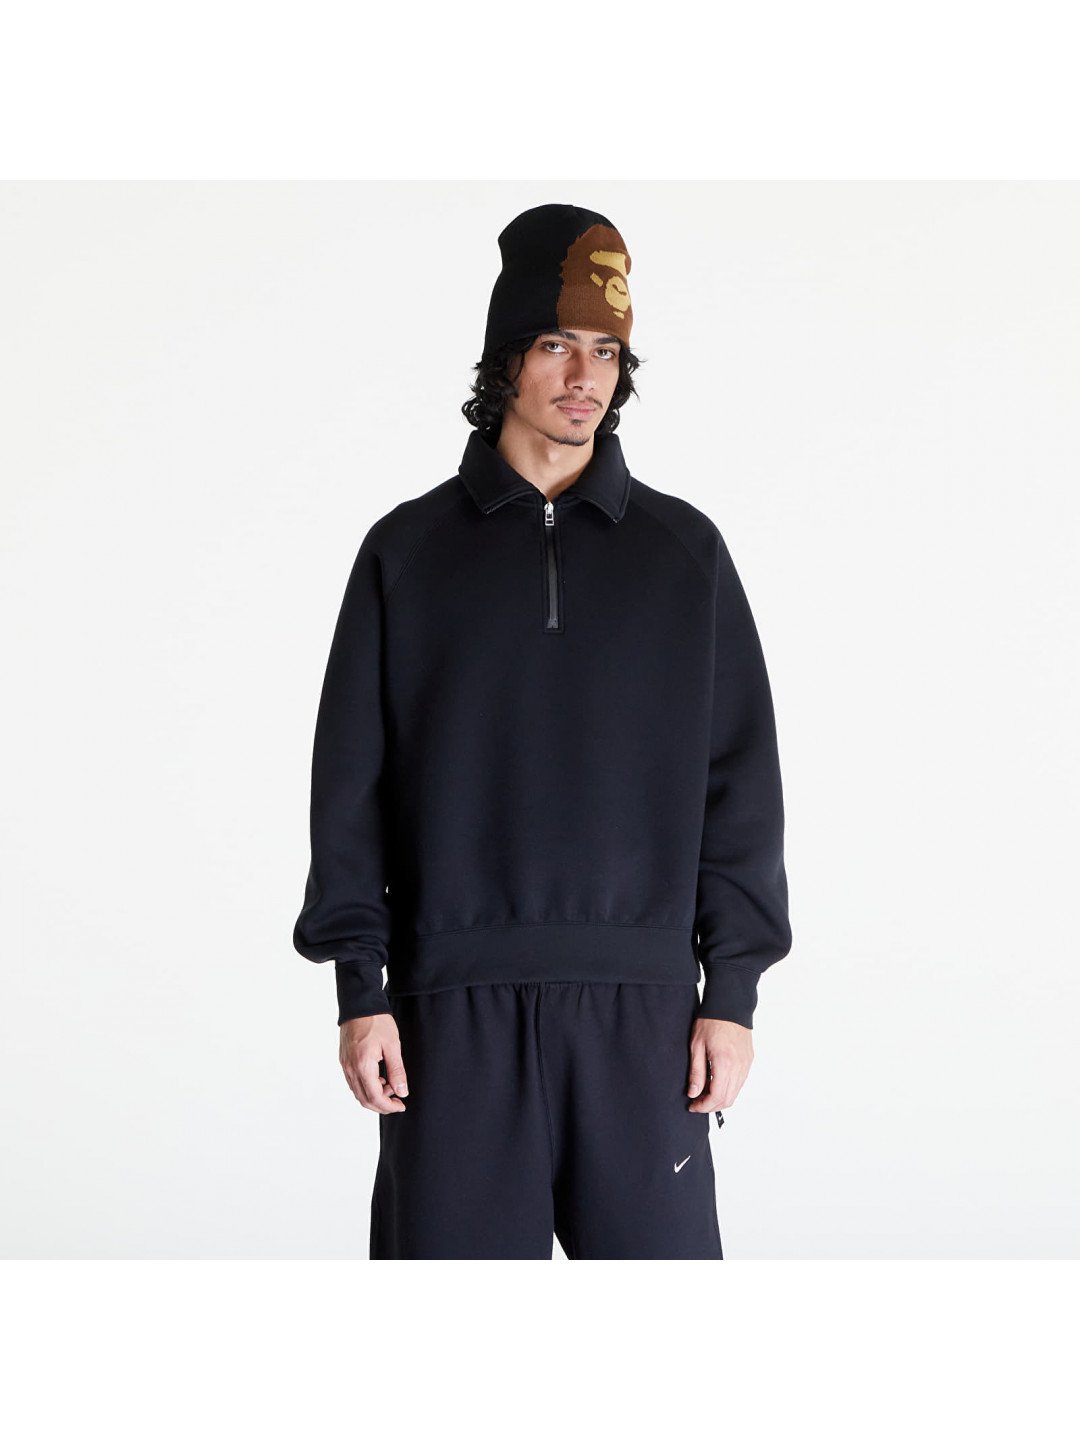 Nike Tech Fleece Men s Reimagined 1 2-Zip Top Black